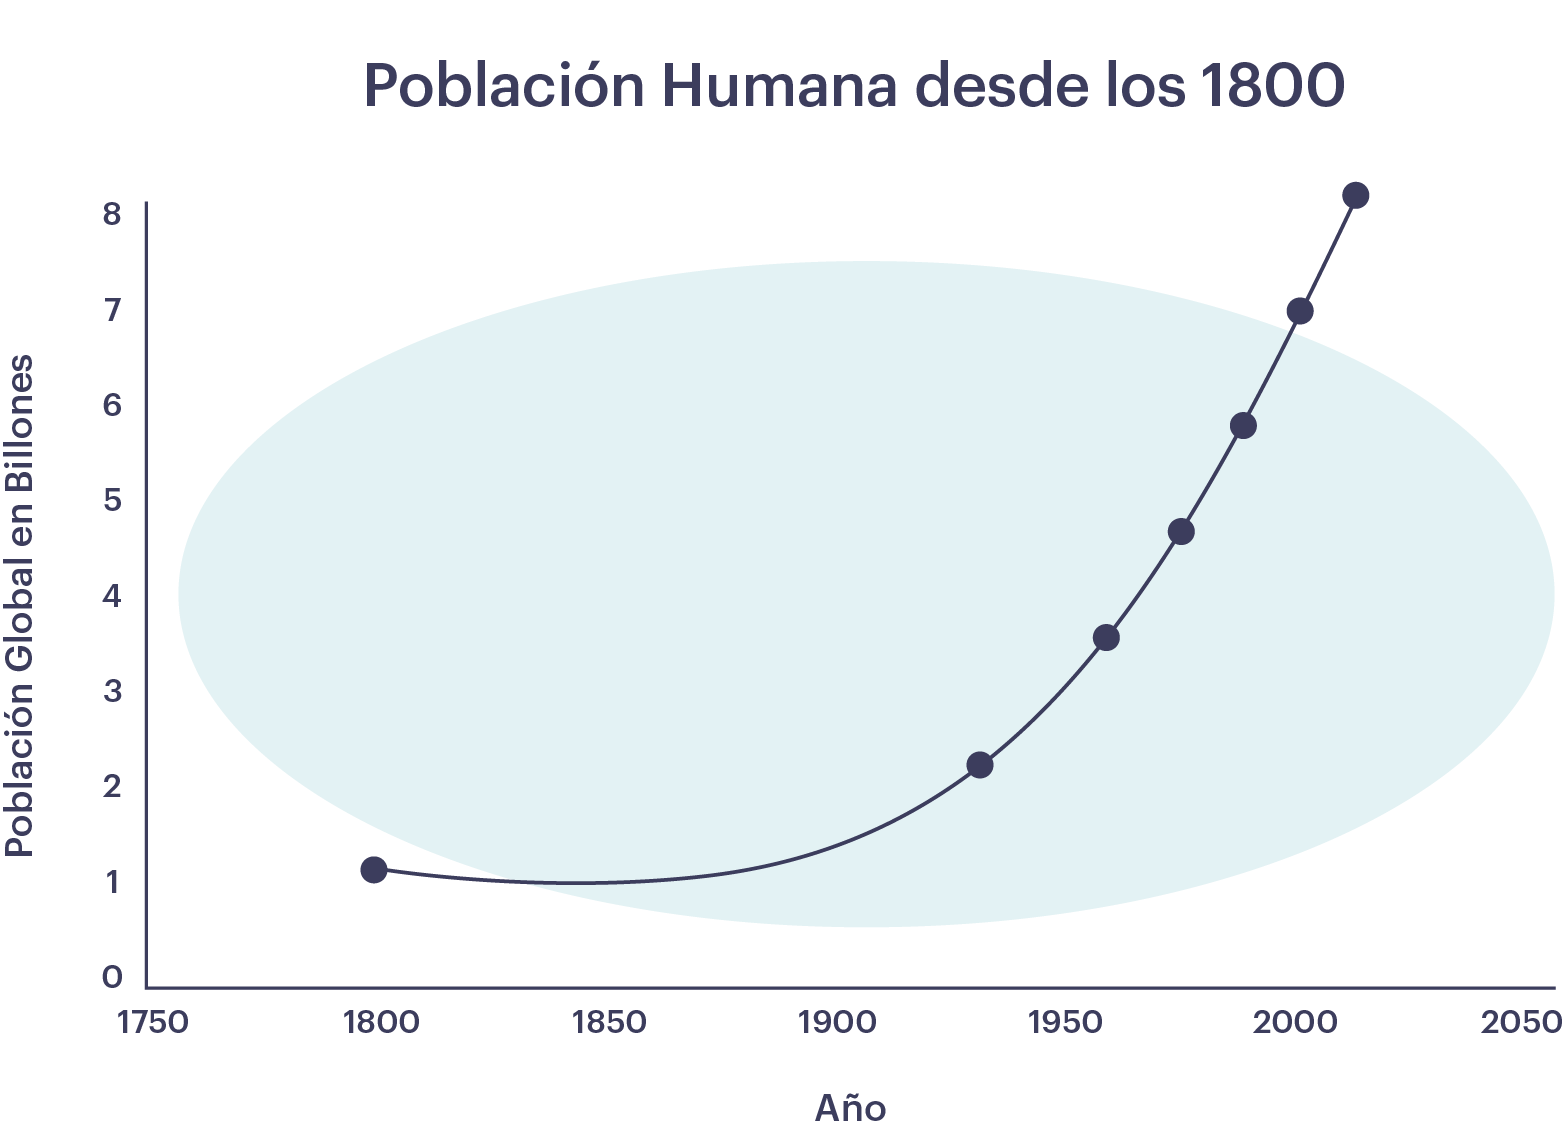 Gráfico de crecimiento de la población humana desde 1800 hasta el presente. El crecimiento exponencial comienza a mediados del siglo XIX.